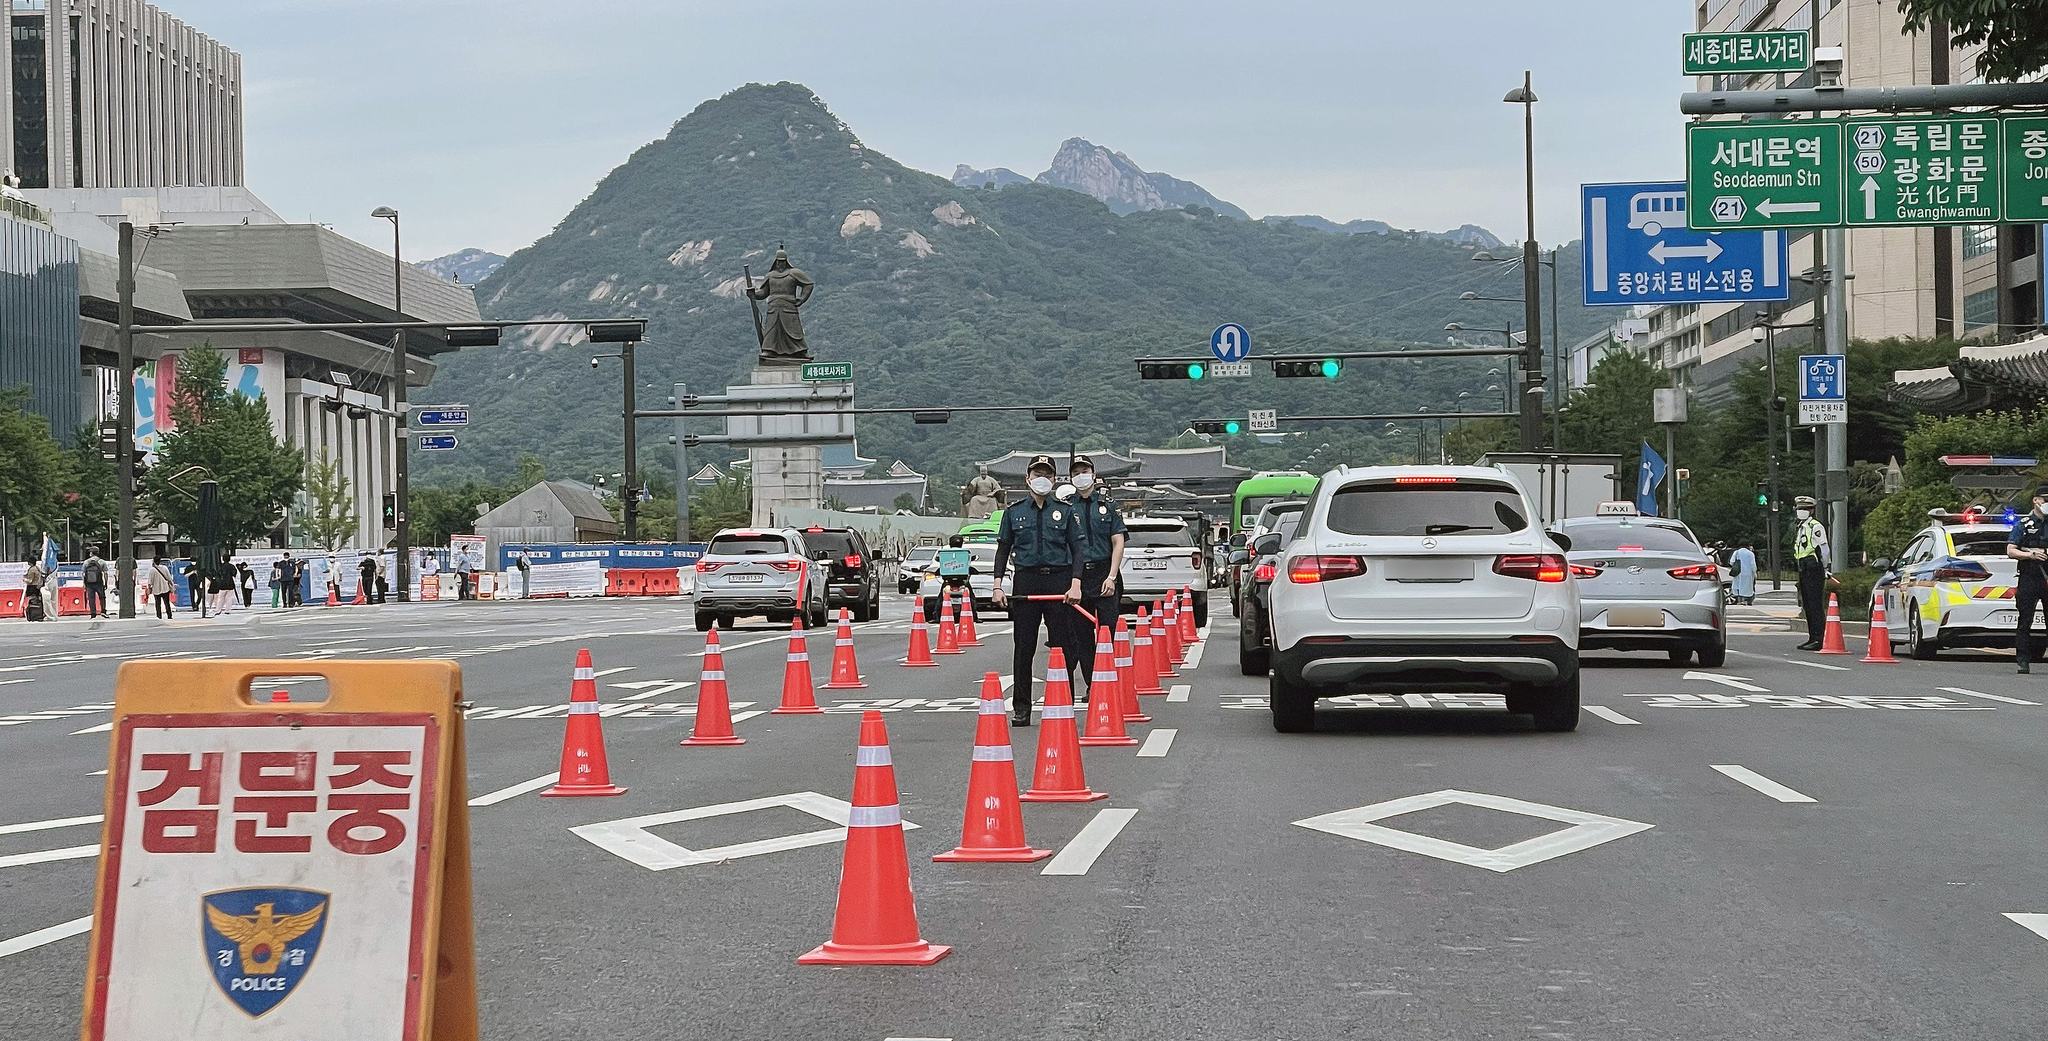 민주노총의 전국노동자대회가 예정된 3일 오전 서울 여의도 사거리에서 경찰이 임시 검문소를 설치하고 지나는 차량을 검문하고 있다. 뉴스1 